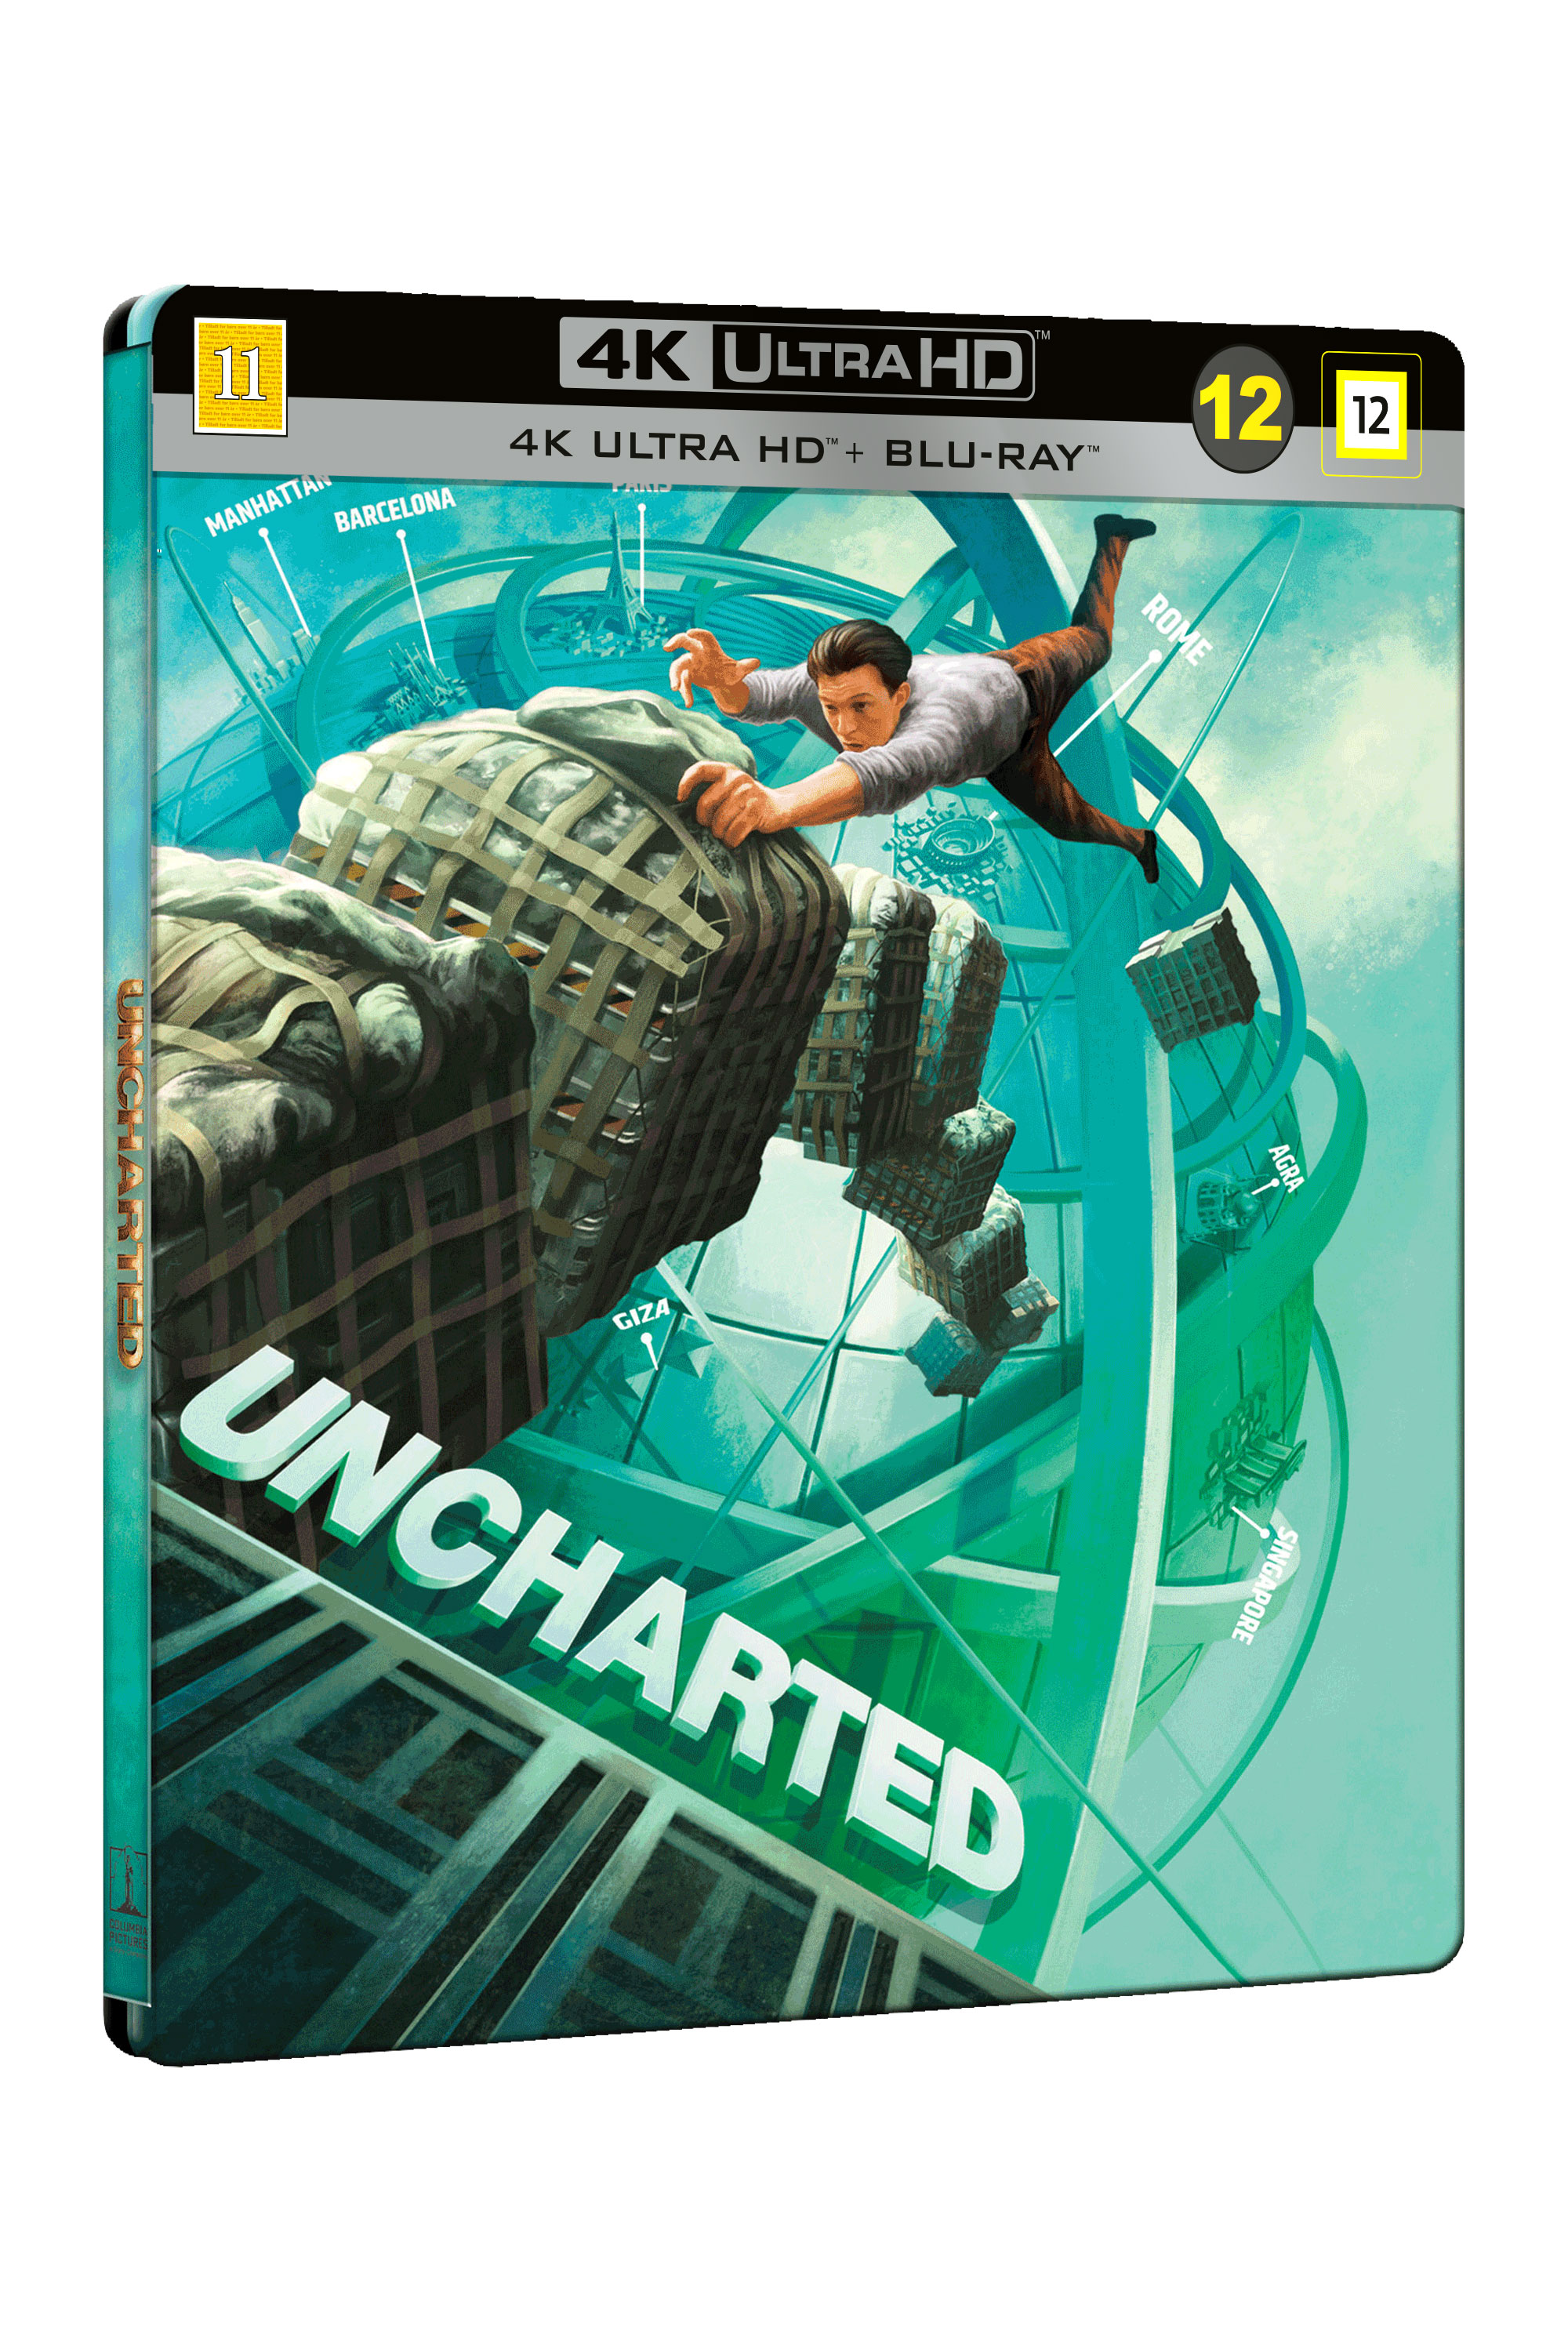 Uncharted - Steelbook Edition - 4K UHD + blu-ray  - Geen NL OT op 4K UHD